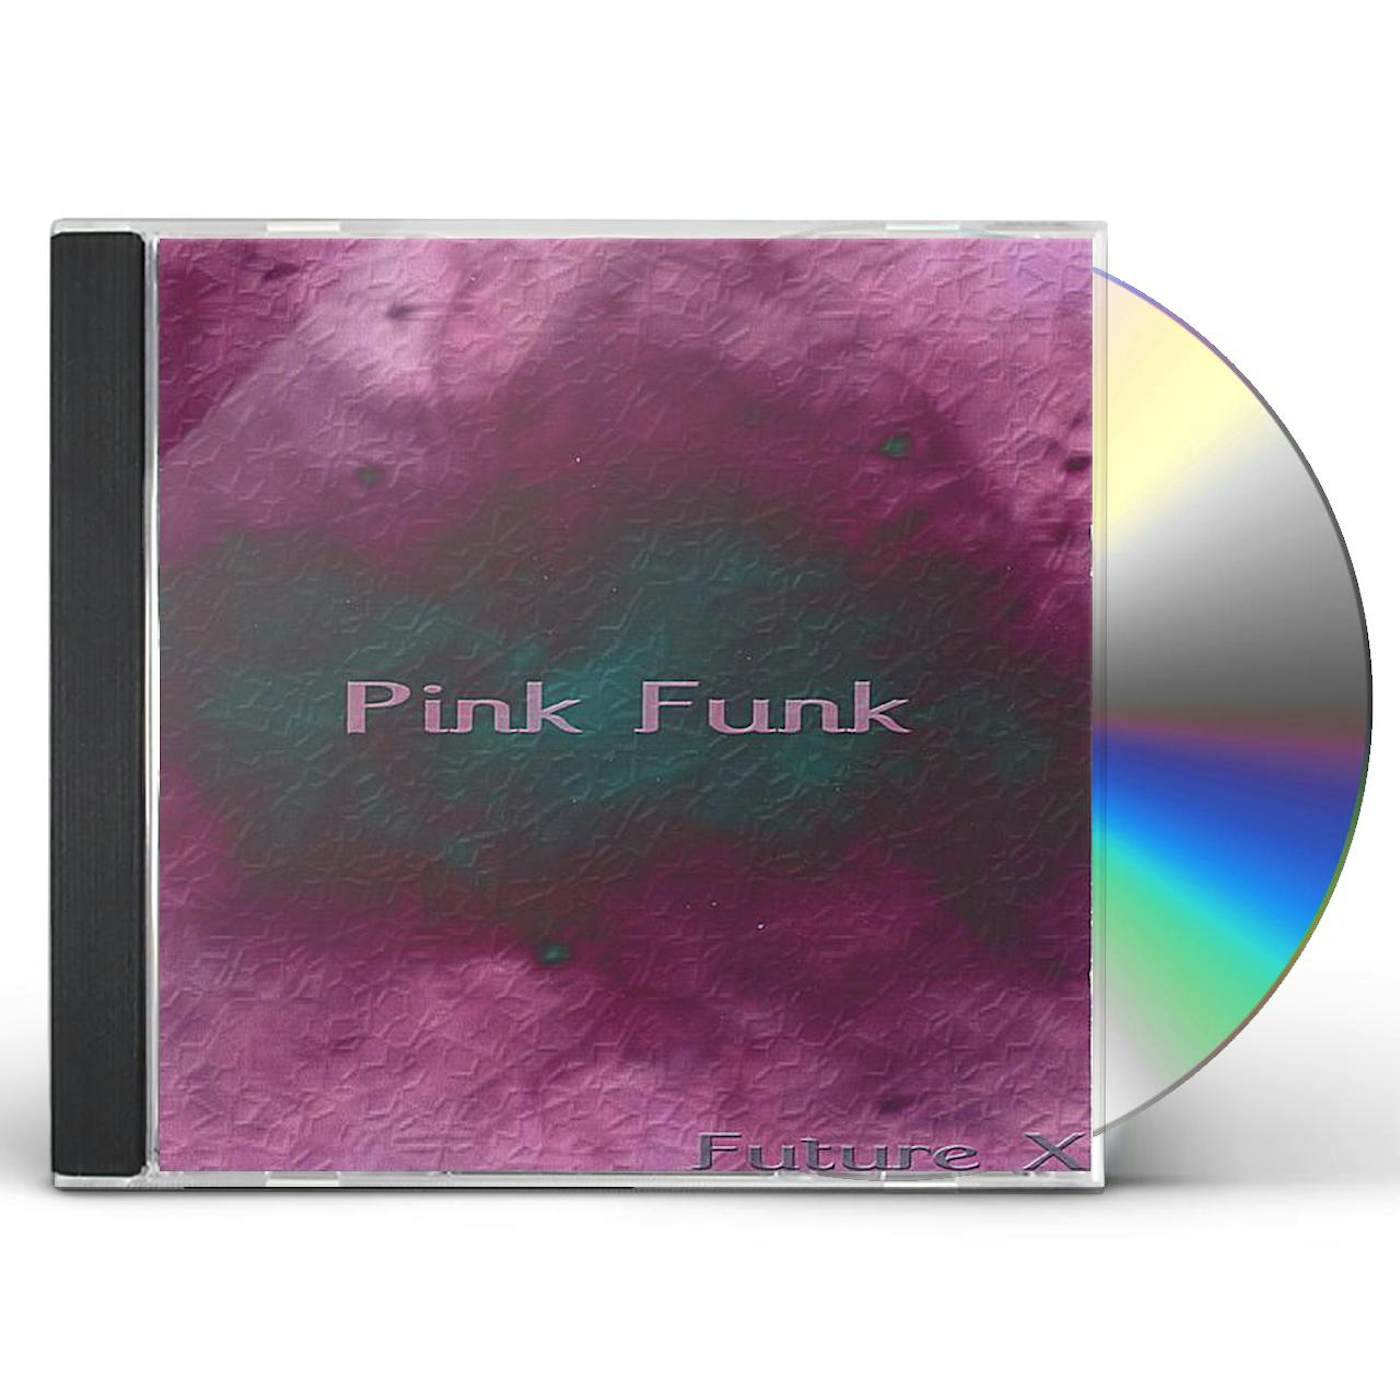 X-Future PINK FUNK CD